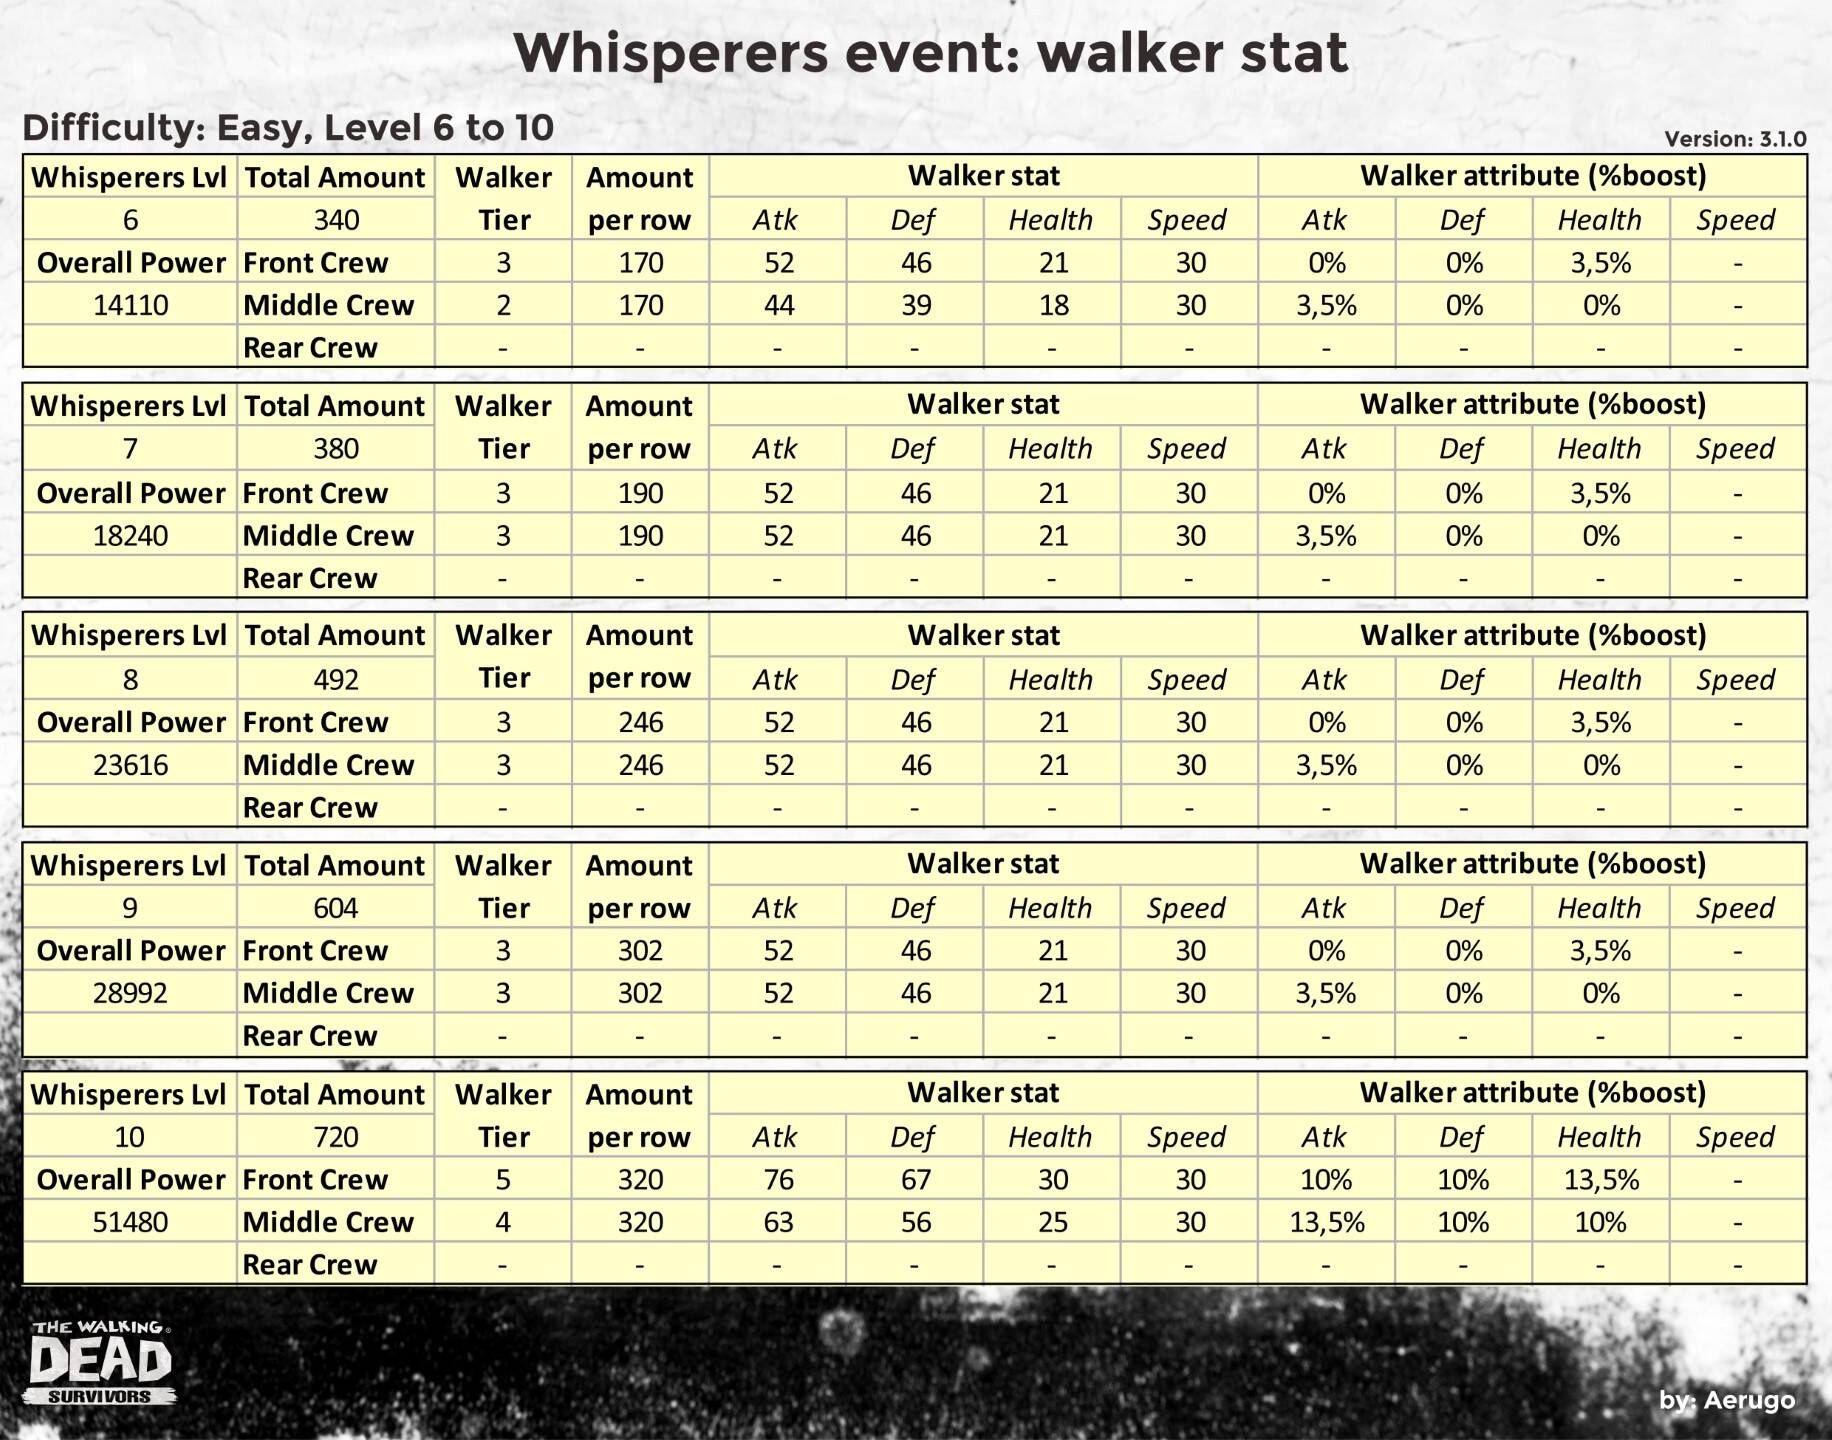 Whisperers_walkerstat_v3.1.0_part02 (1).jpg